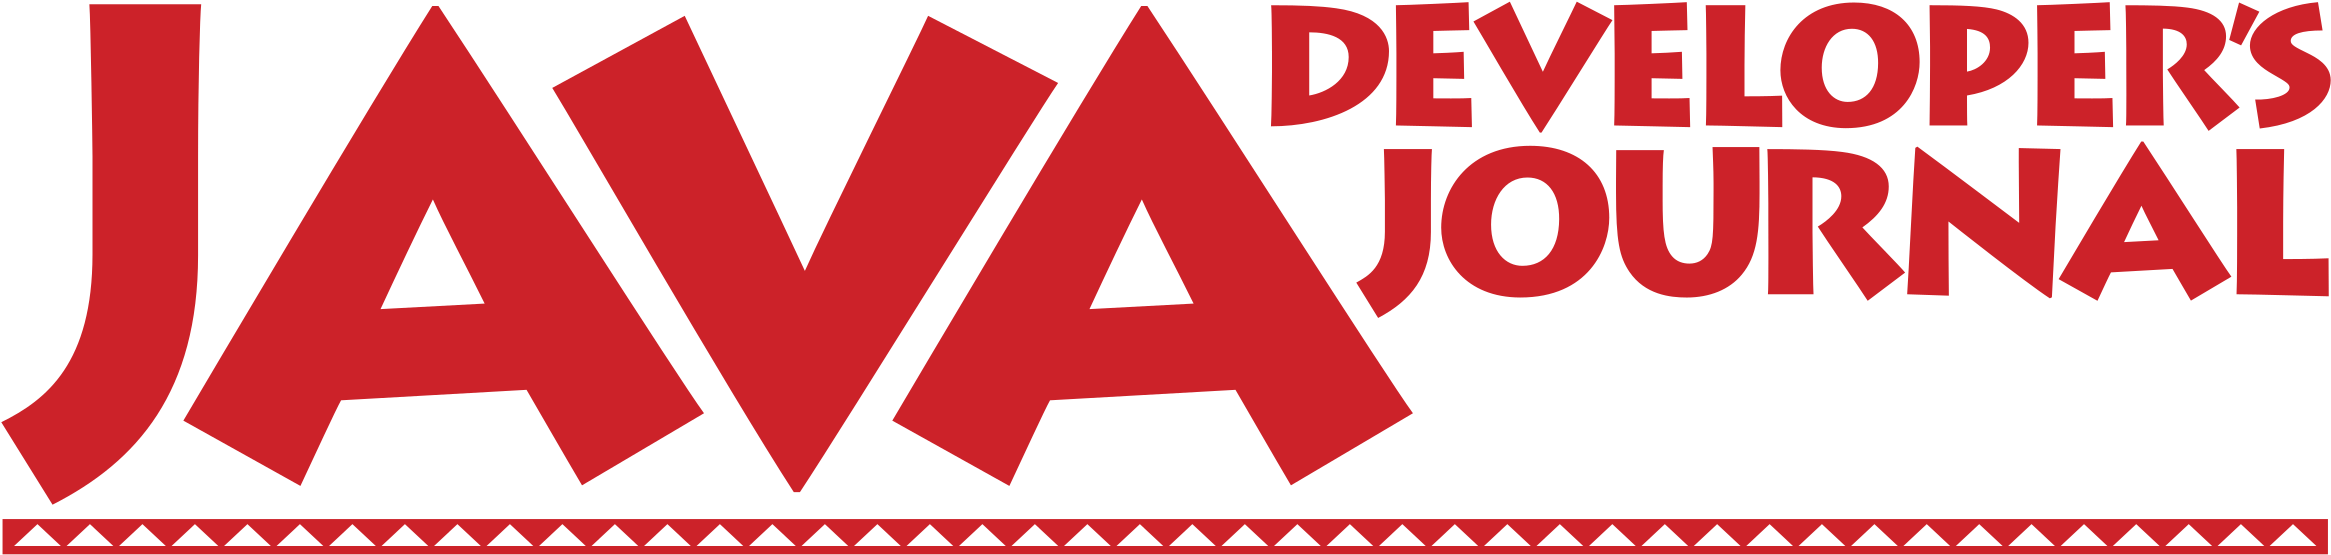 Java Developers Journal Logo PNG